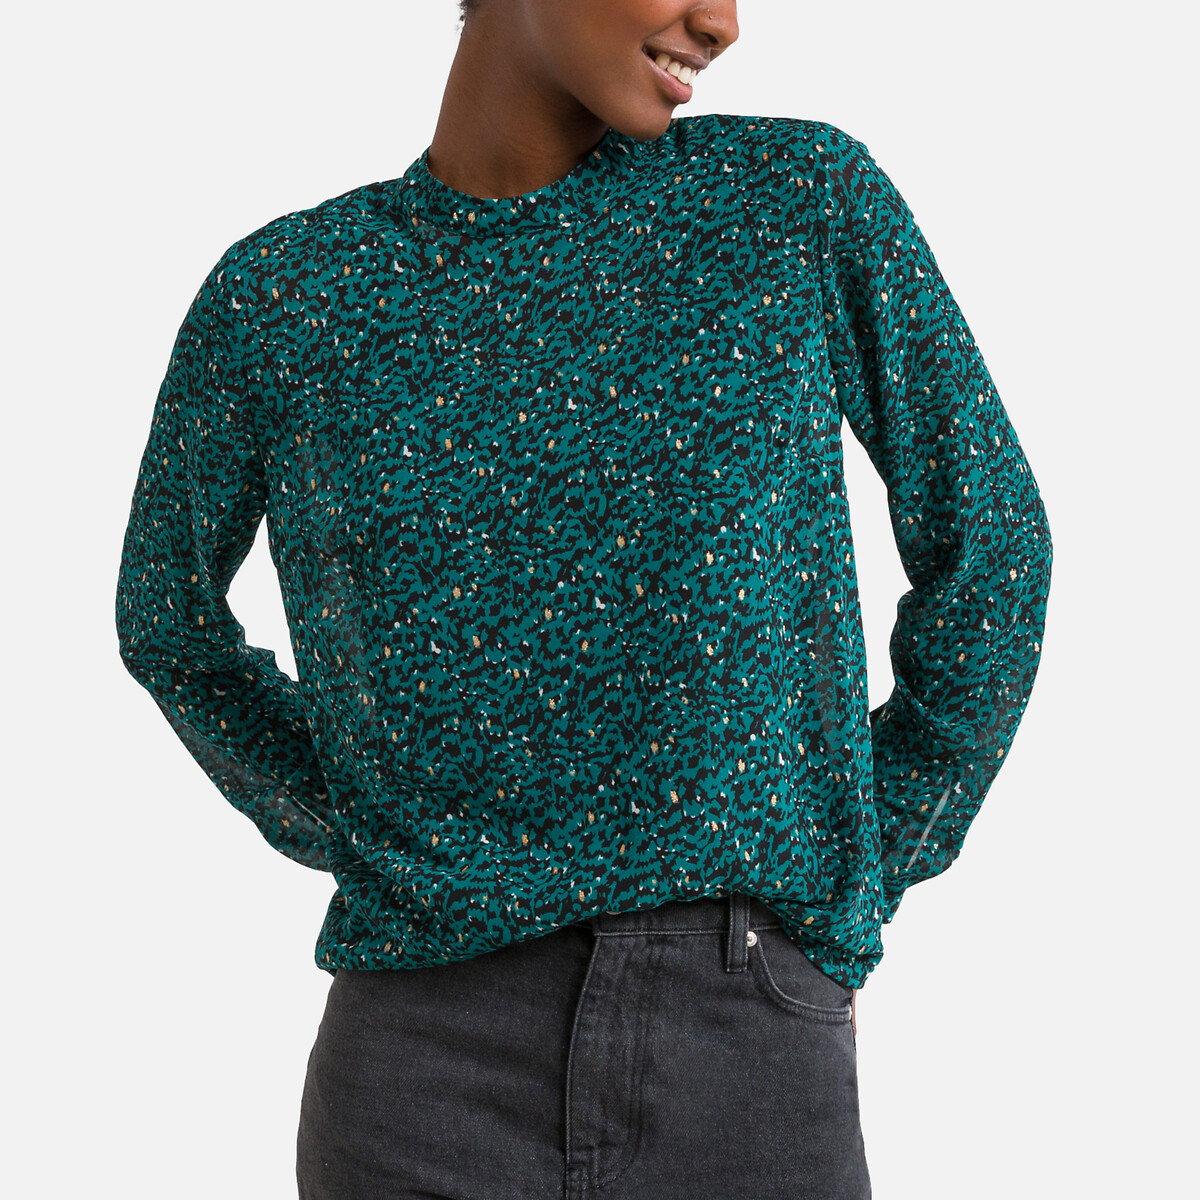 Блузка С воротником-стойкой длинными рукавами с принтом XL зеленый LaRedoute, размер XL - фото 1